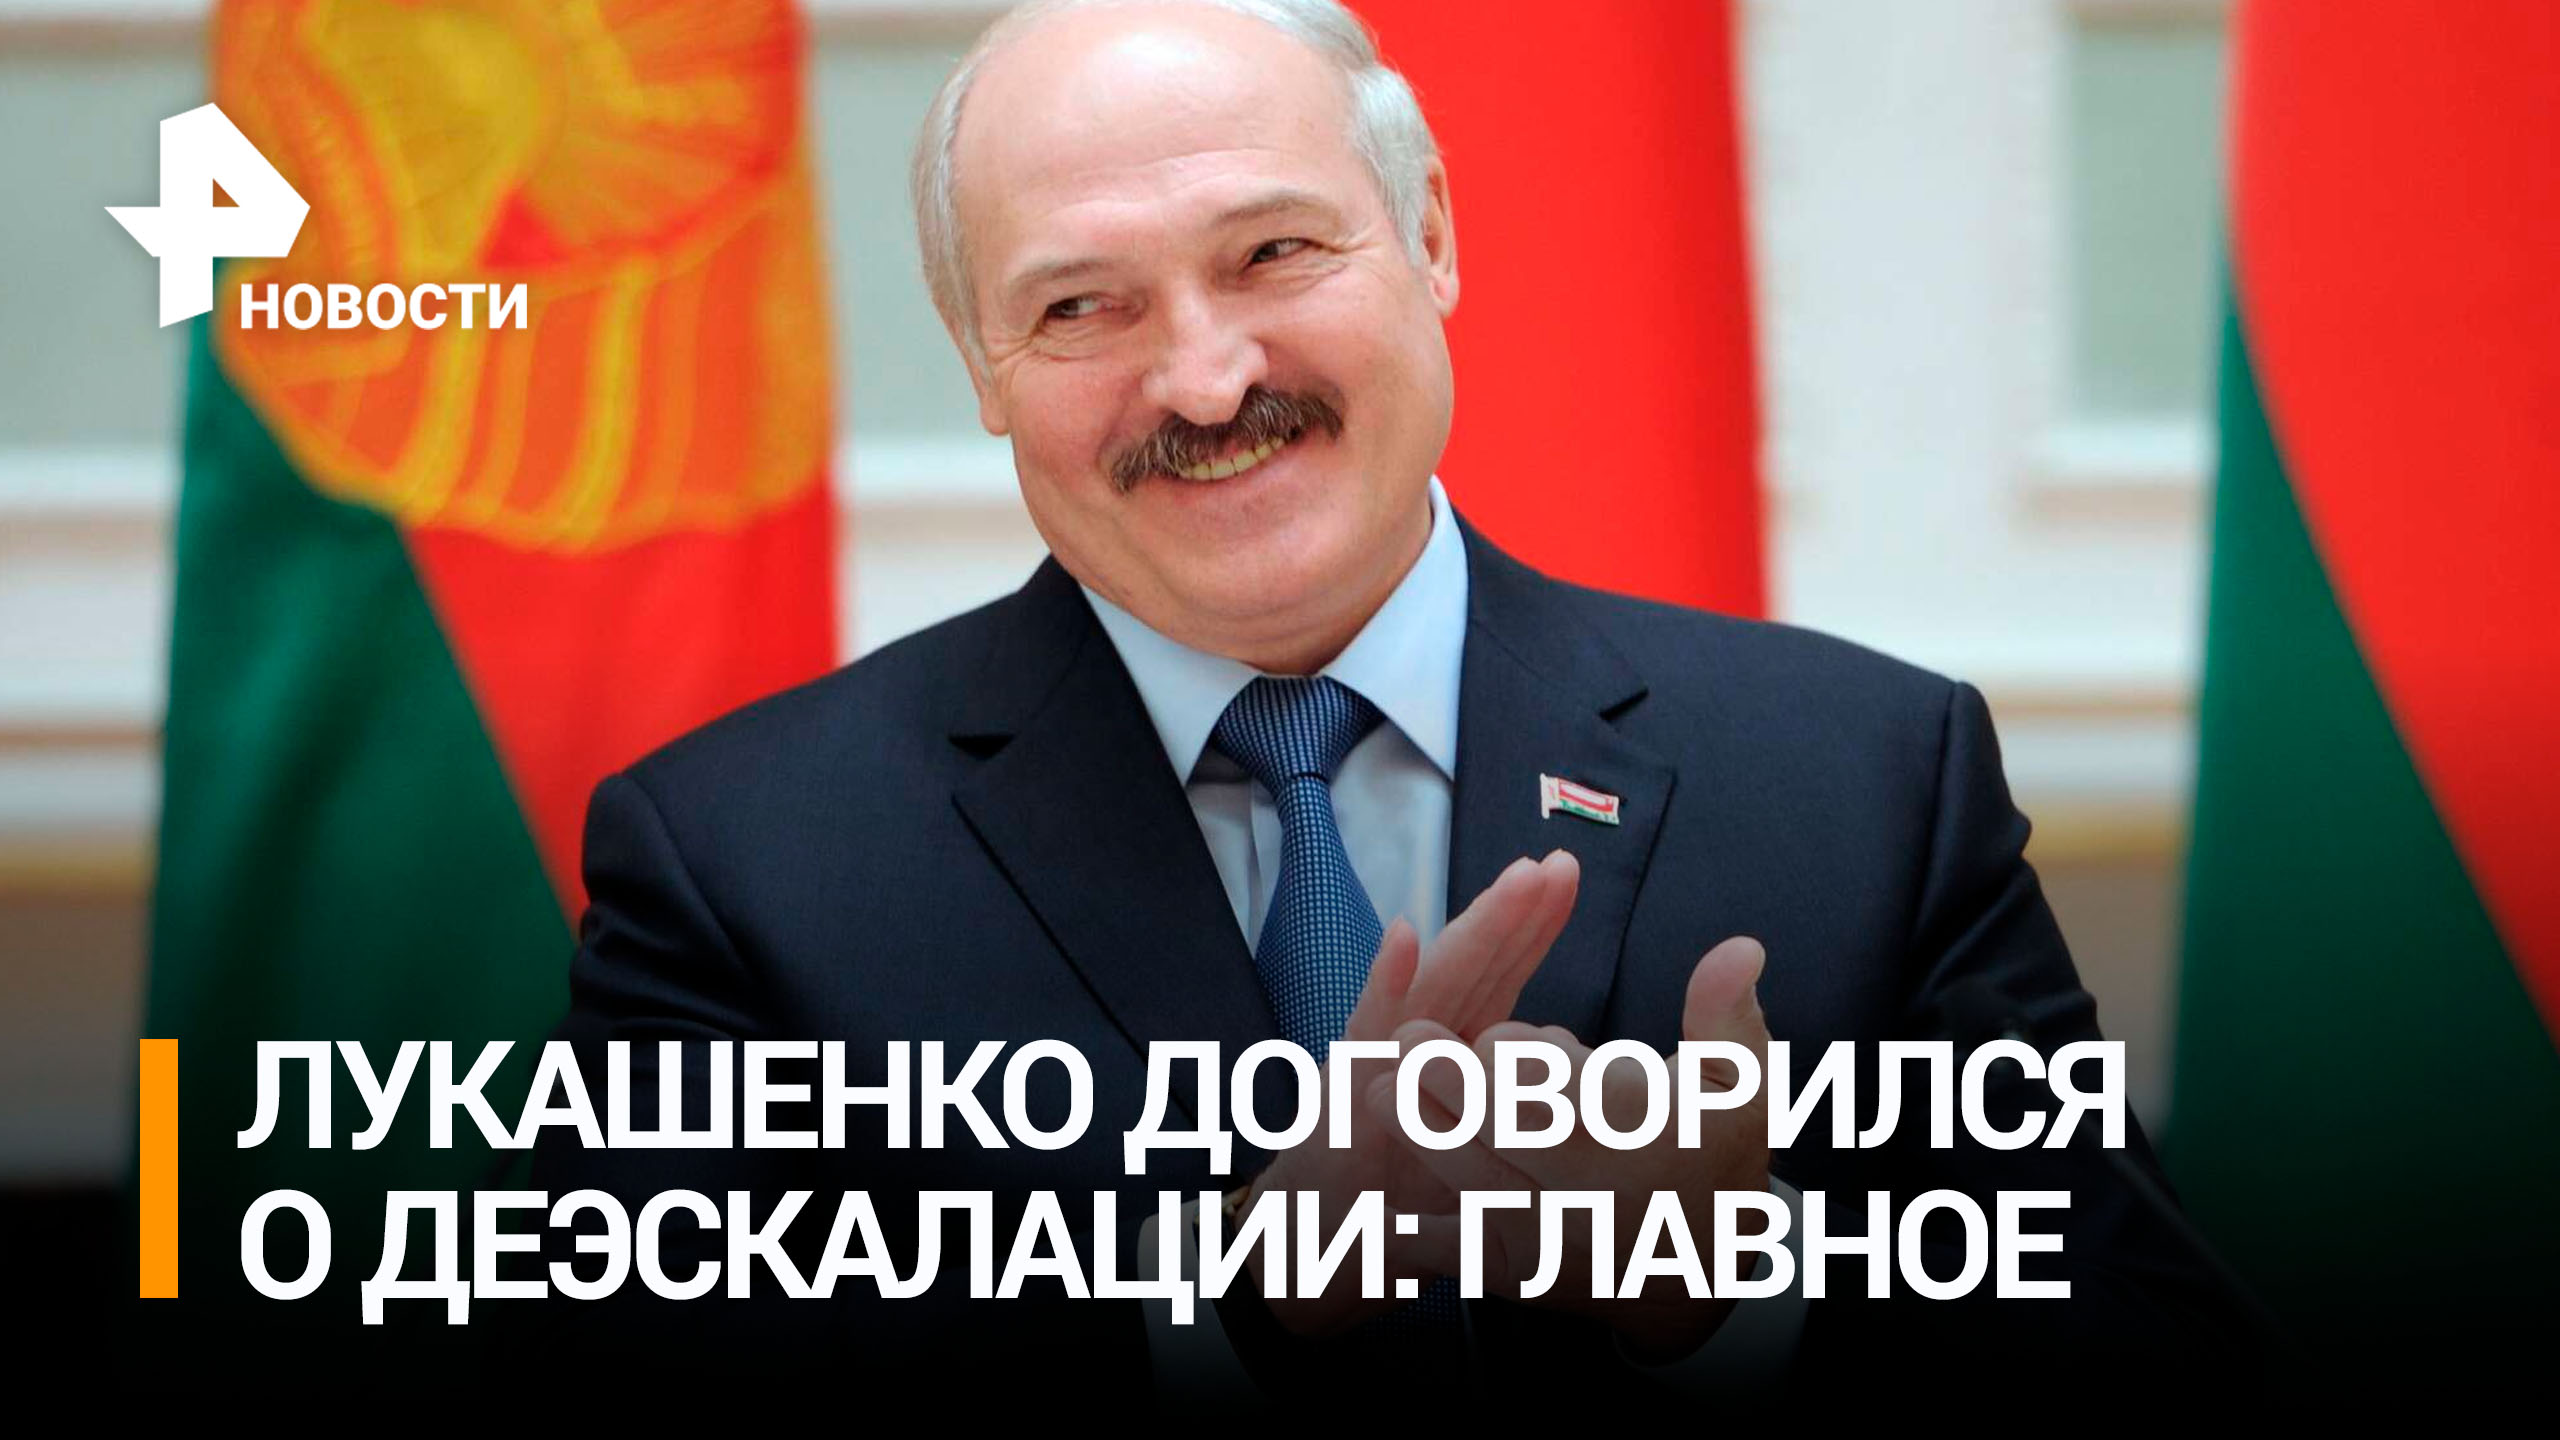 В ЧВК "Вагнер" приняли предложение Лукашенко об остановке движения и о шагах по деэскалации: главное